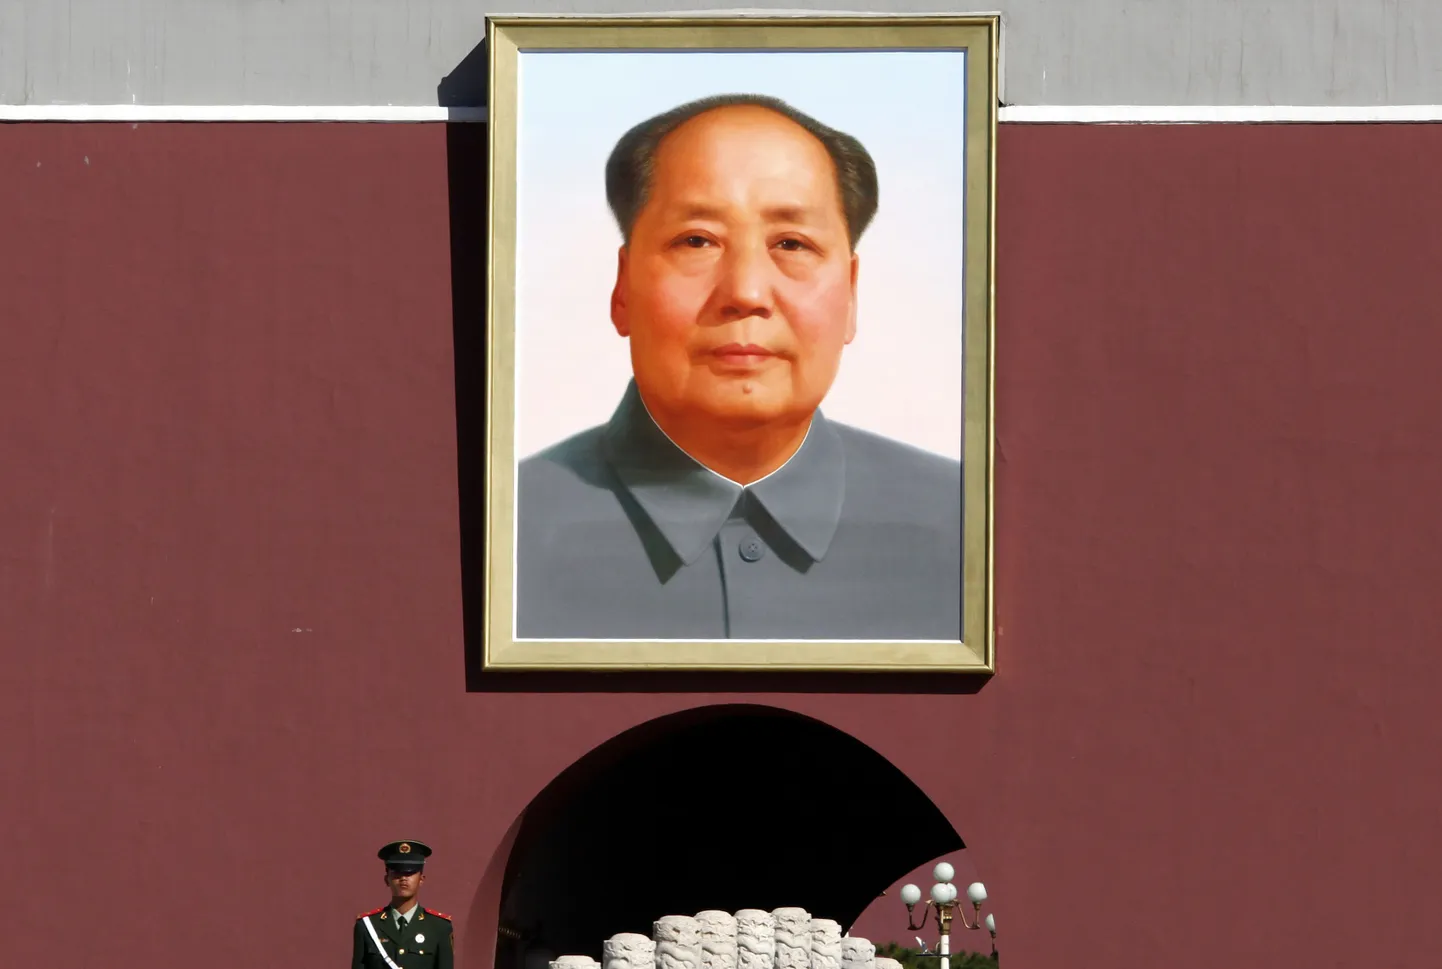 Hiina kommunistliku rahvavabariigi rajaja Mao Zedongi portree Tiananmeni väljakul.